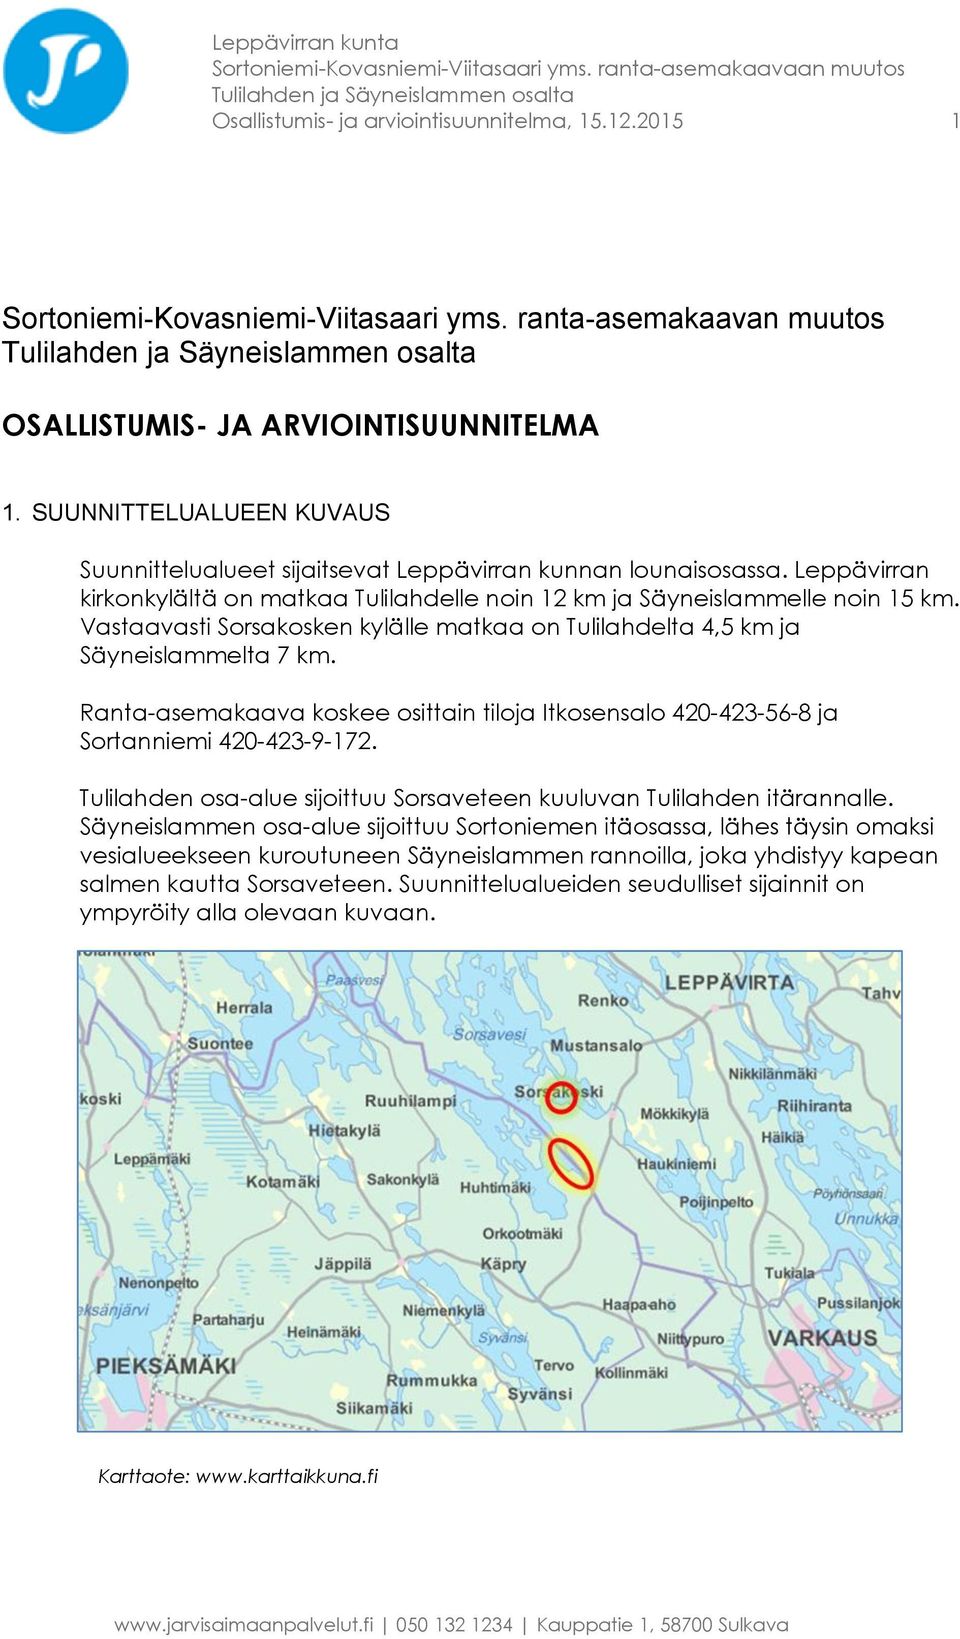 Vastaavasti Sorsakosken kylälle matkaa on Tulilahdelta 4,5 km ja Säyneislammelta 7 km. Ranta-asemakaava koskee osittain tiloja Itkosensalo 420-423-56-8 ja Sortanniemi 420-423-9-172.